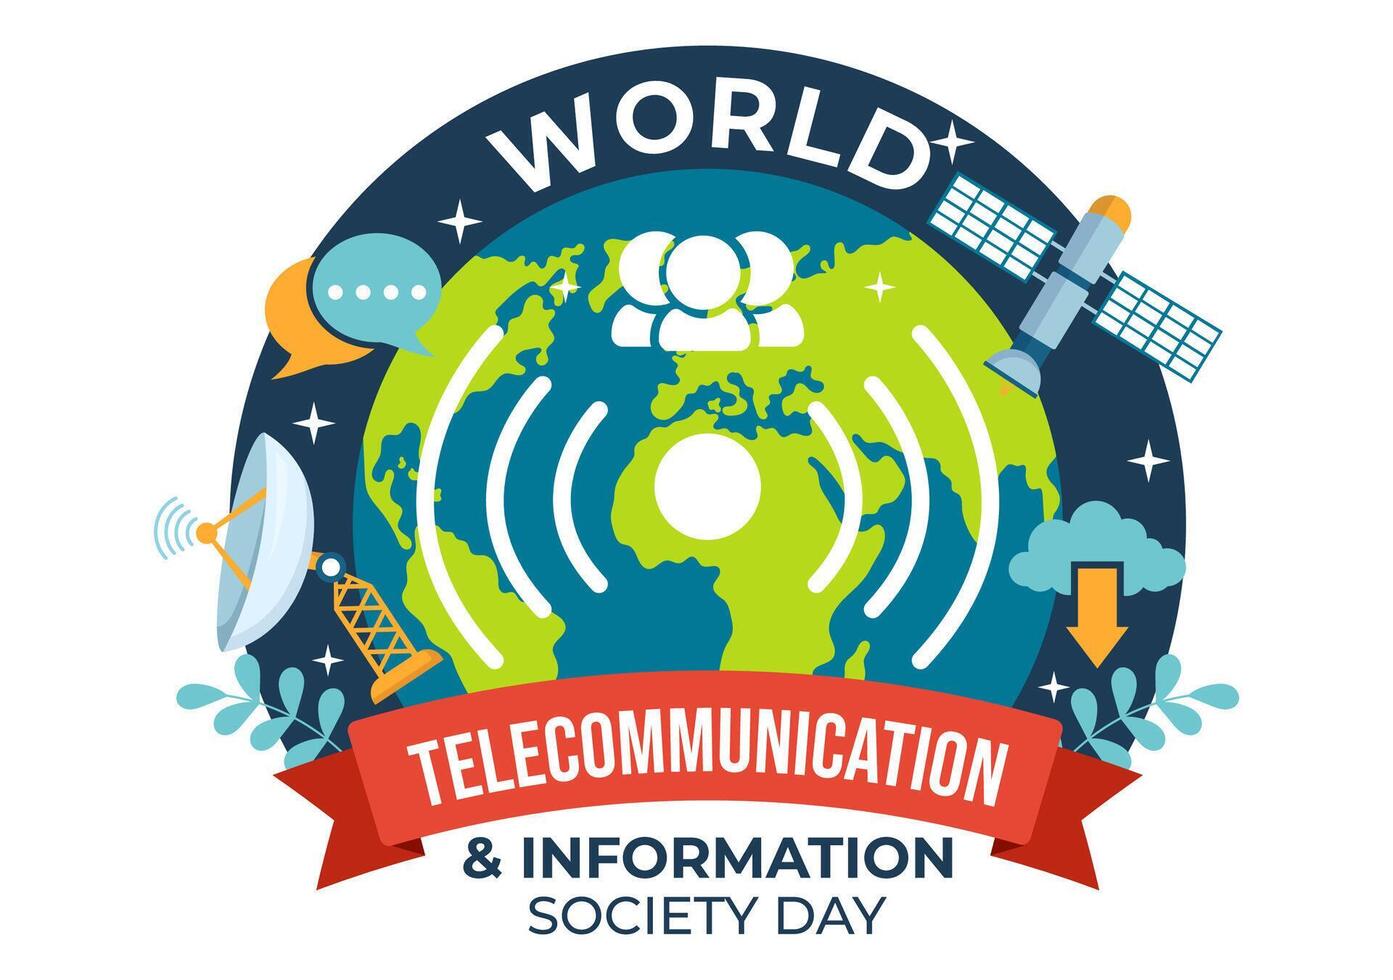 mundo telecomunicación y información sociedad día vector ilustración en mayo 17 con comunicaciones red a través de tierra globo en plano antecedentes